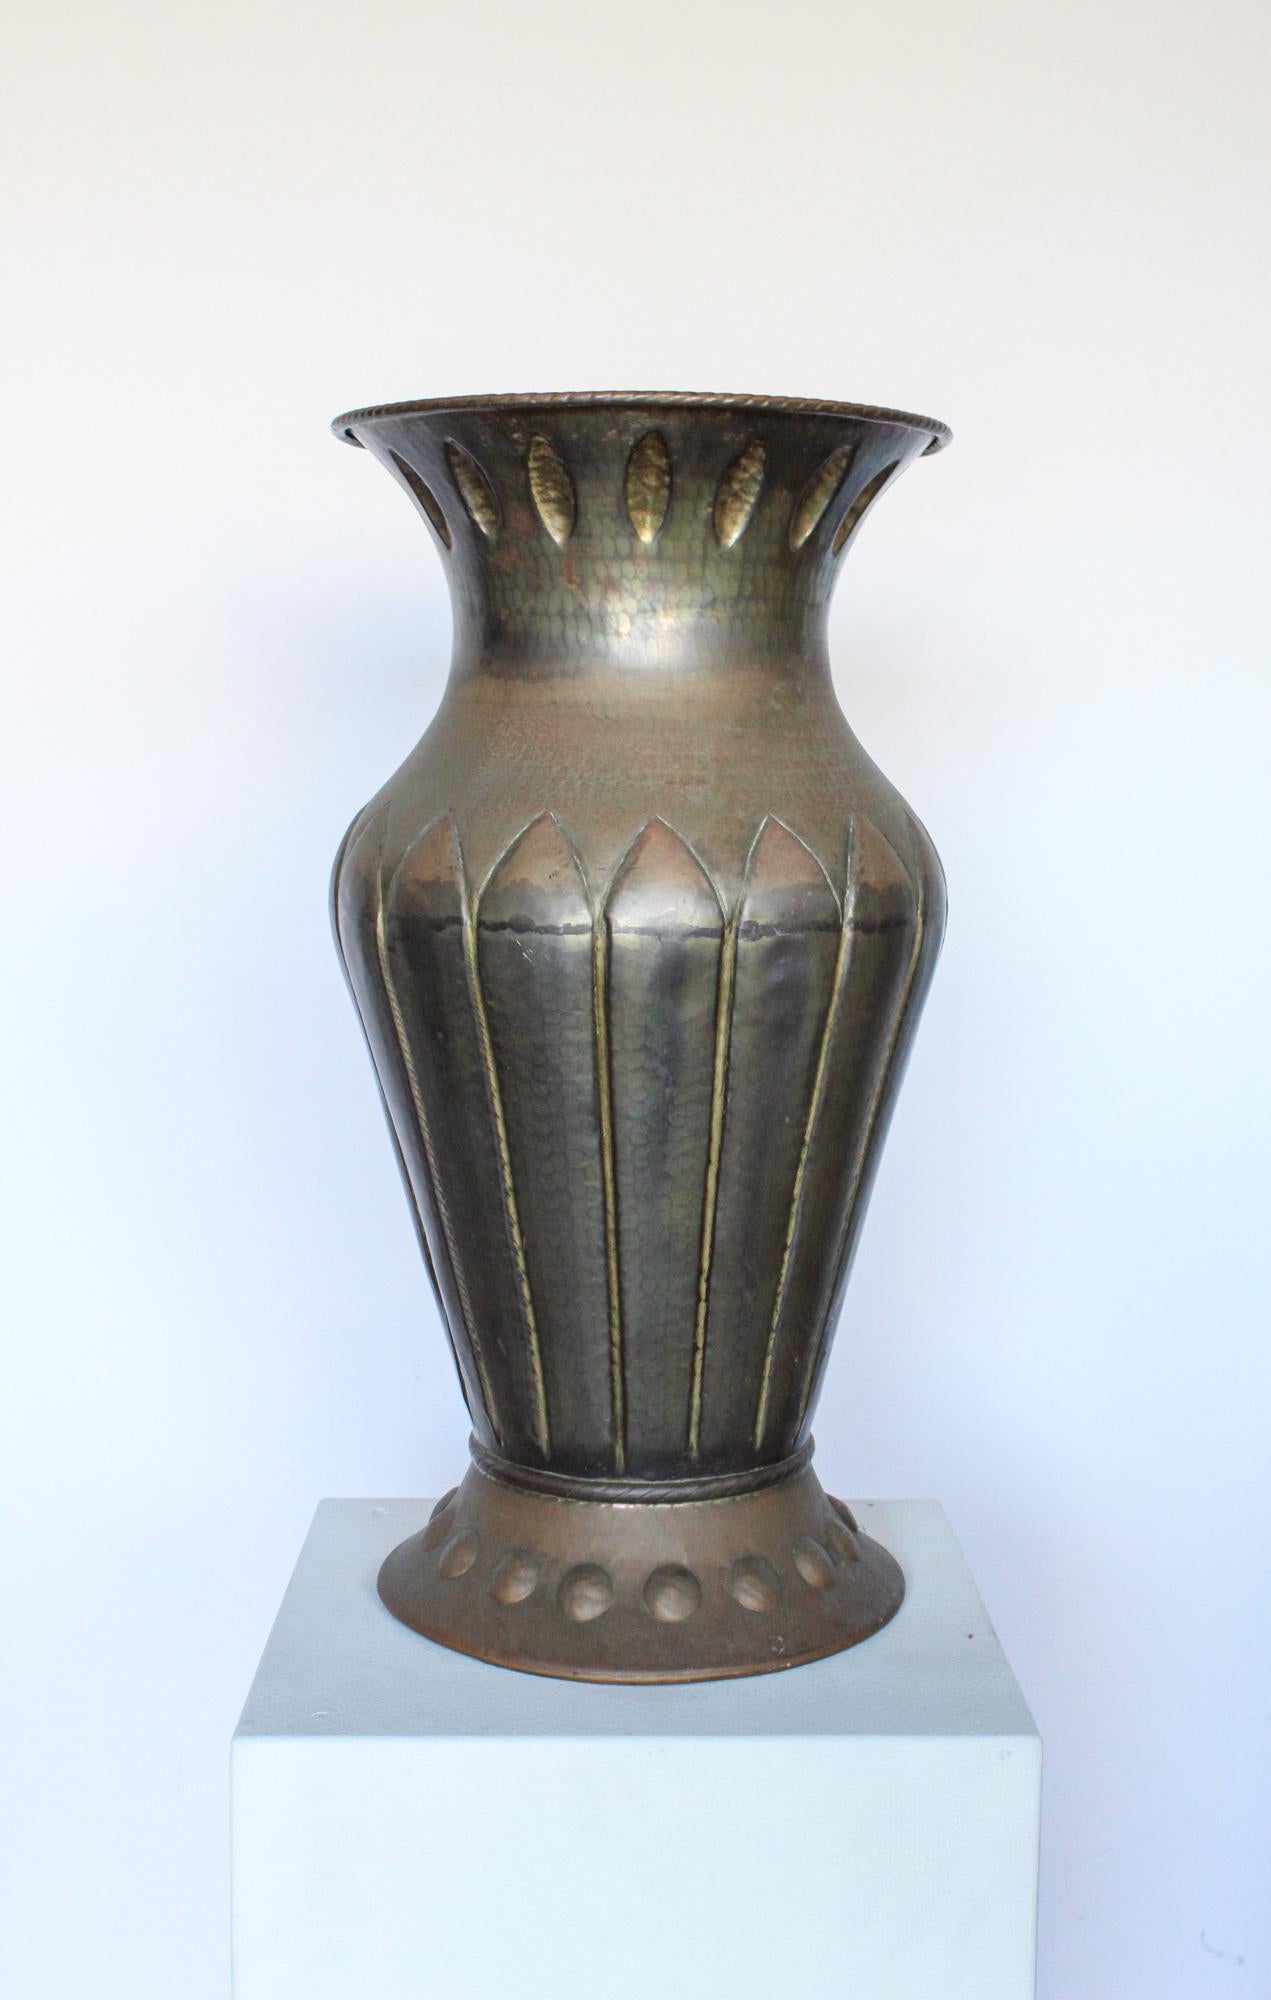 Monumentales Vasengefäß aus handgehämmertem Kupfer im Art-Déco-Stil, hergestellt in Italien, 1920er Jahre. Die Vase hat eine starke Ähnlichkeit mit den Entwürfen von Vittorio Zecchin. Wir haben die Vase so belassen, wie sie gefunden wurde, mit einer